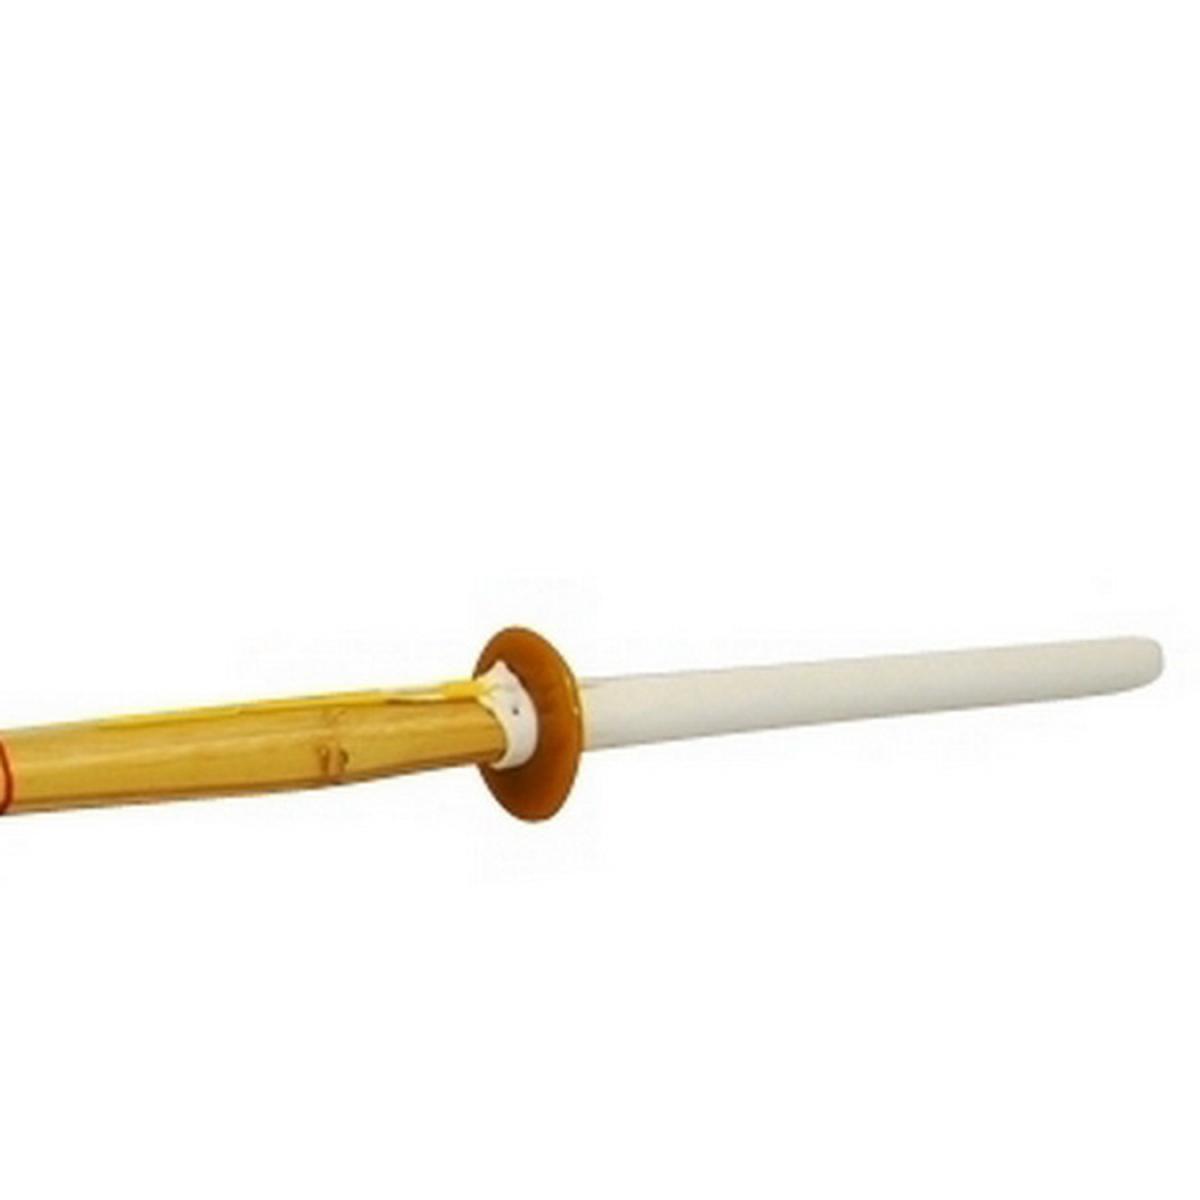 Shinai 115 cm (37) für Kendo ➤ www.bokken-wshop.de✅ passend für Aikido, Kendo, Koryu, Kenjutsu, Yoseikan, Jodot✅ Dein Kendo-Fachhändler!